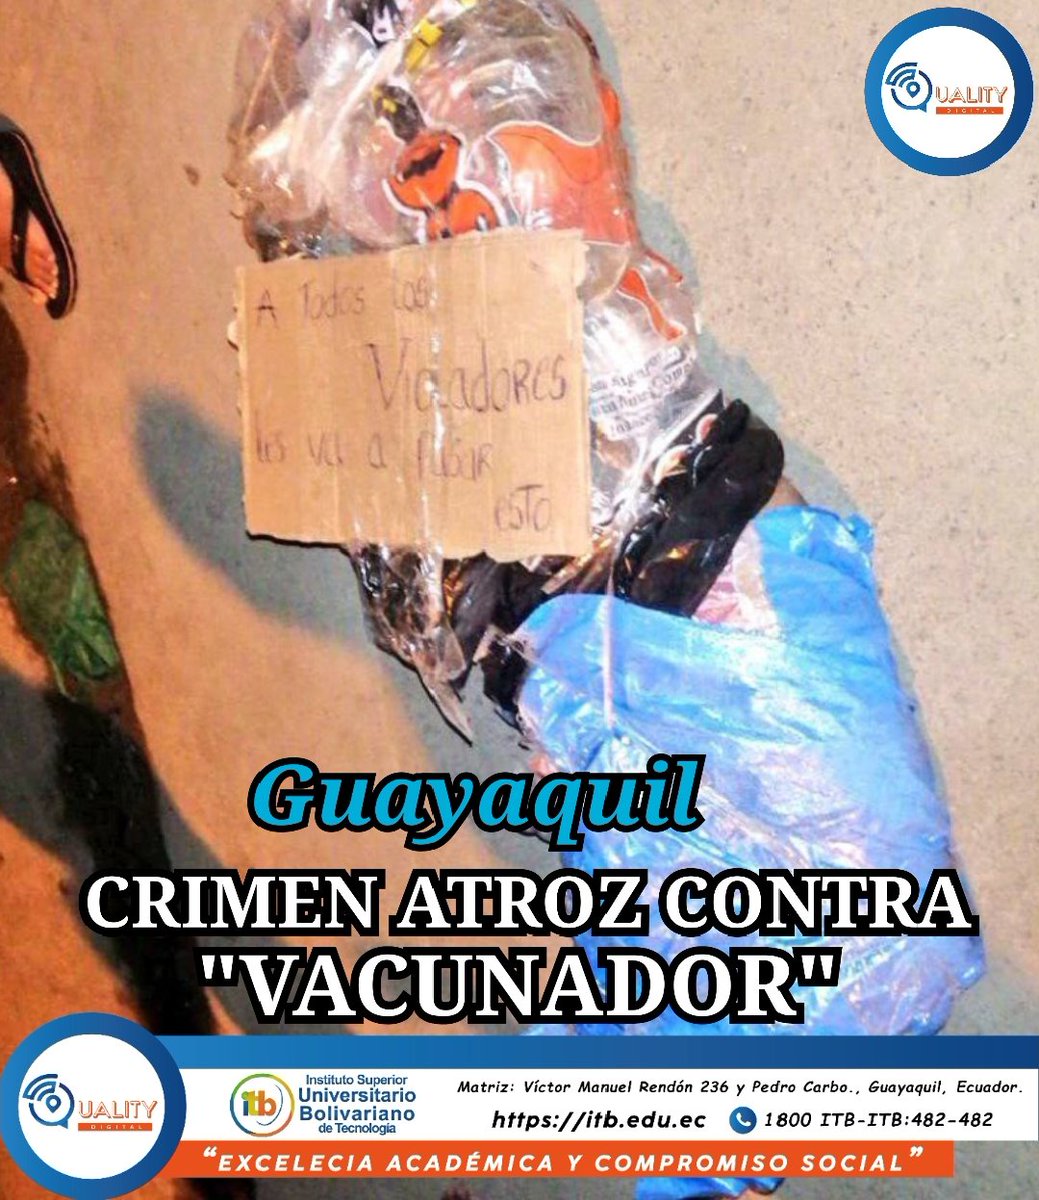 #QualityDigital #Delincuencia
🚨 En Guayaquil, presunto vacunador fue cortado en trocitos y embalado en el sector de Flor de Bastión bloque 7 después de ser asesinado y torturado.